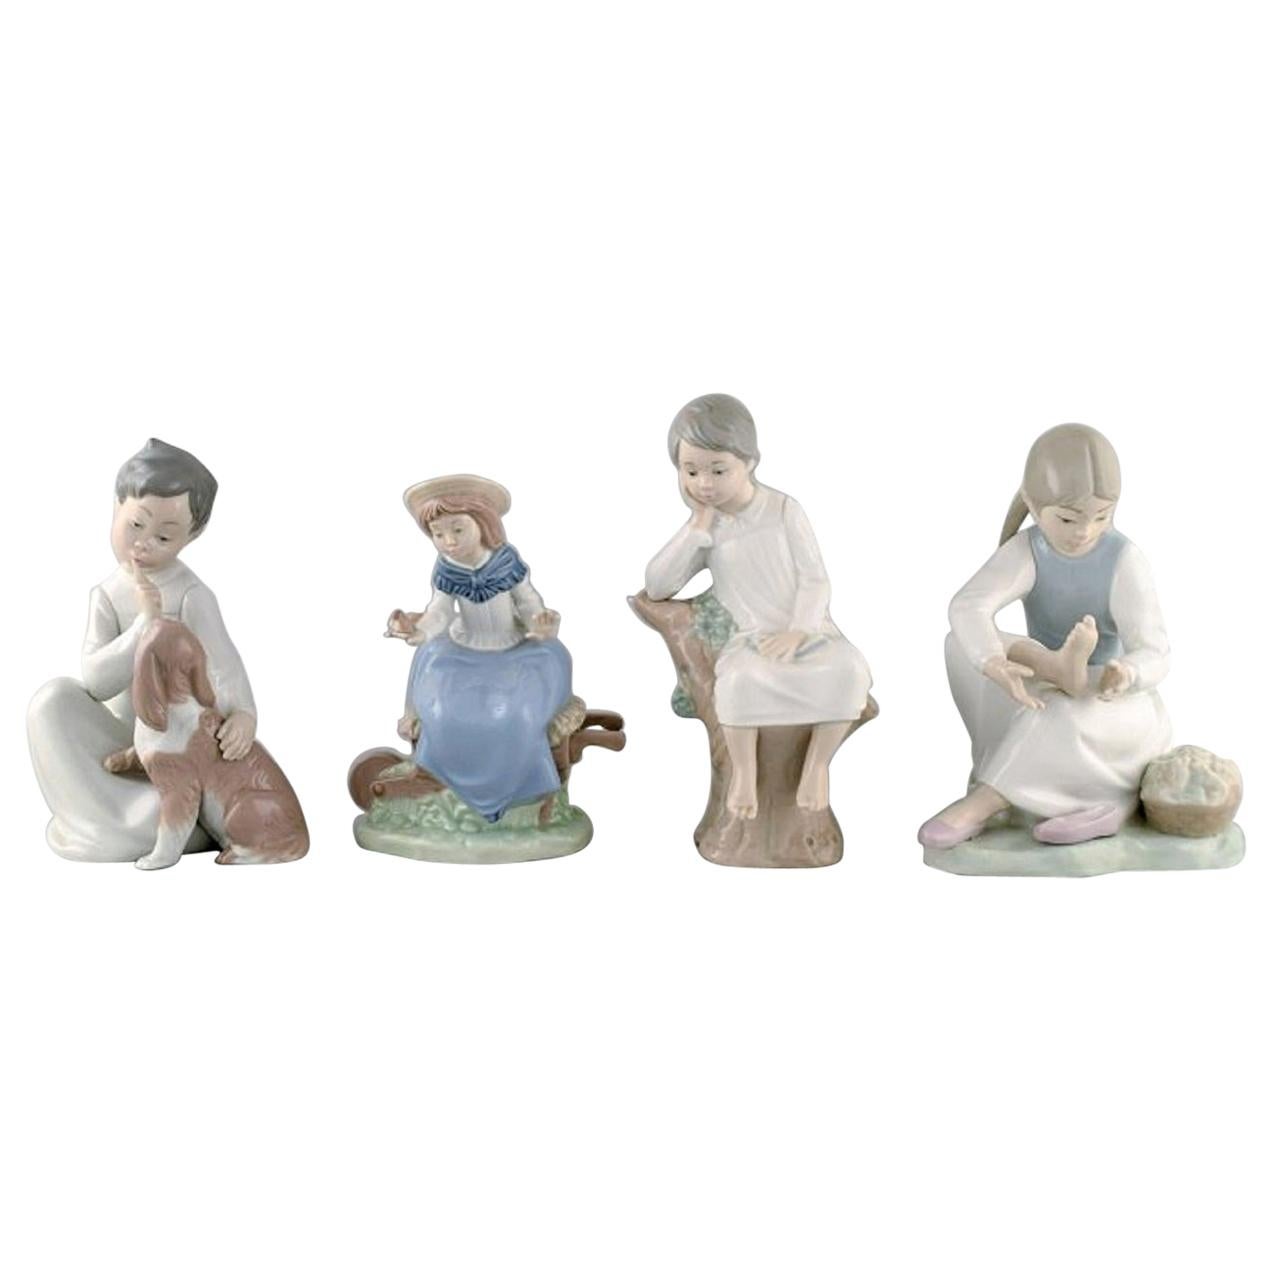 Lladro und Nao, Spanien, vier Porzellanfiguren von Kindern, 1980er-1990er Jahre